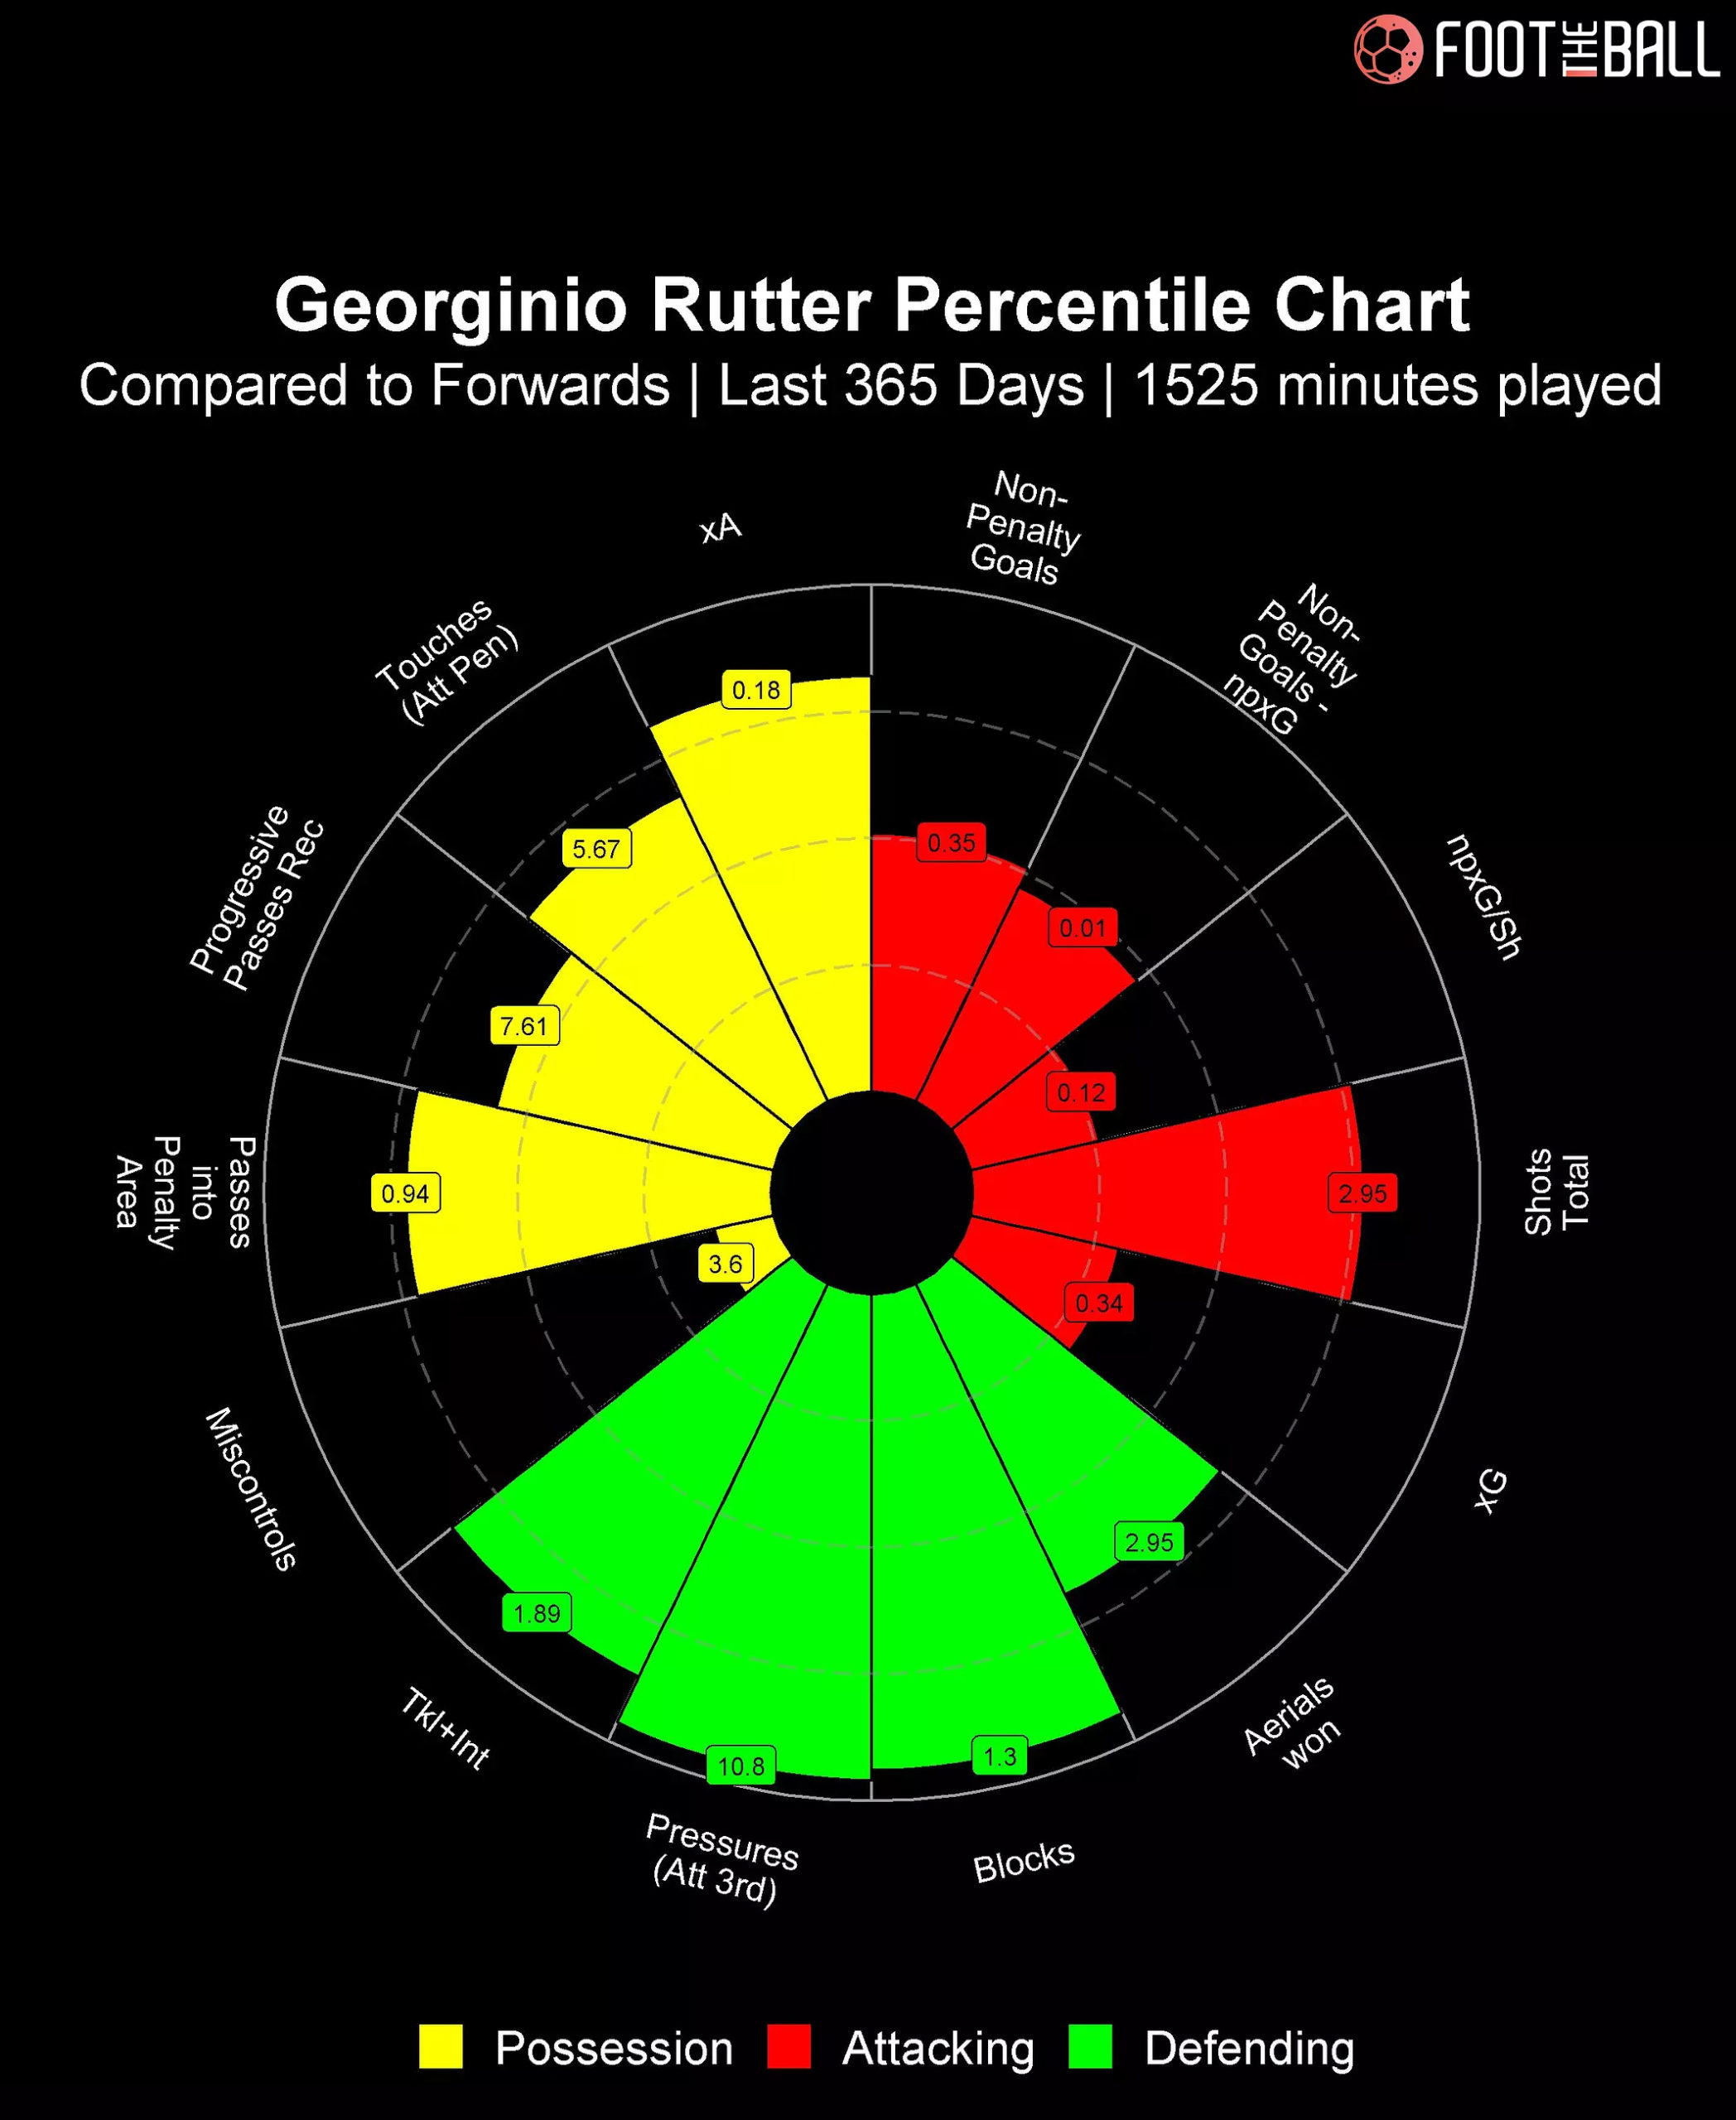 Georginio Rutter percentile chart